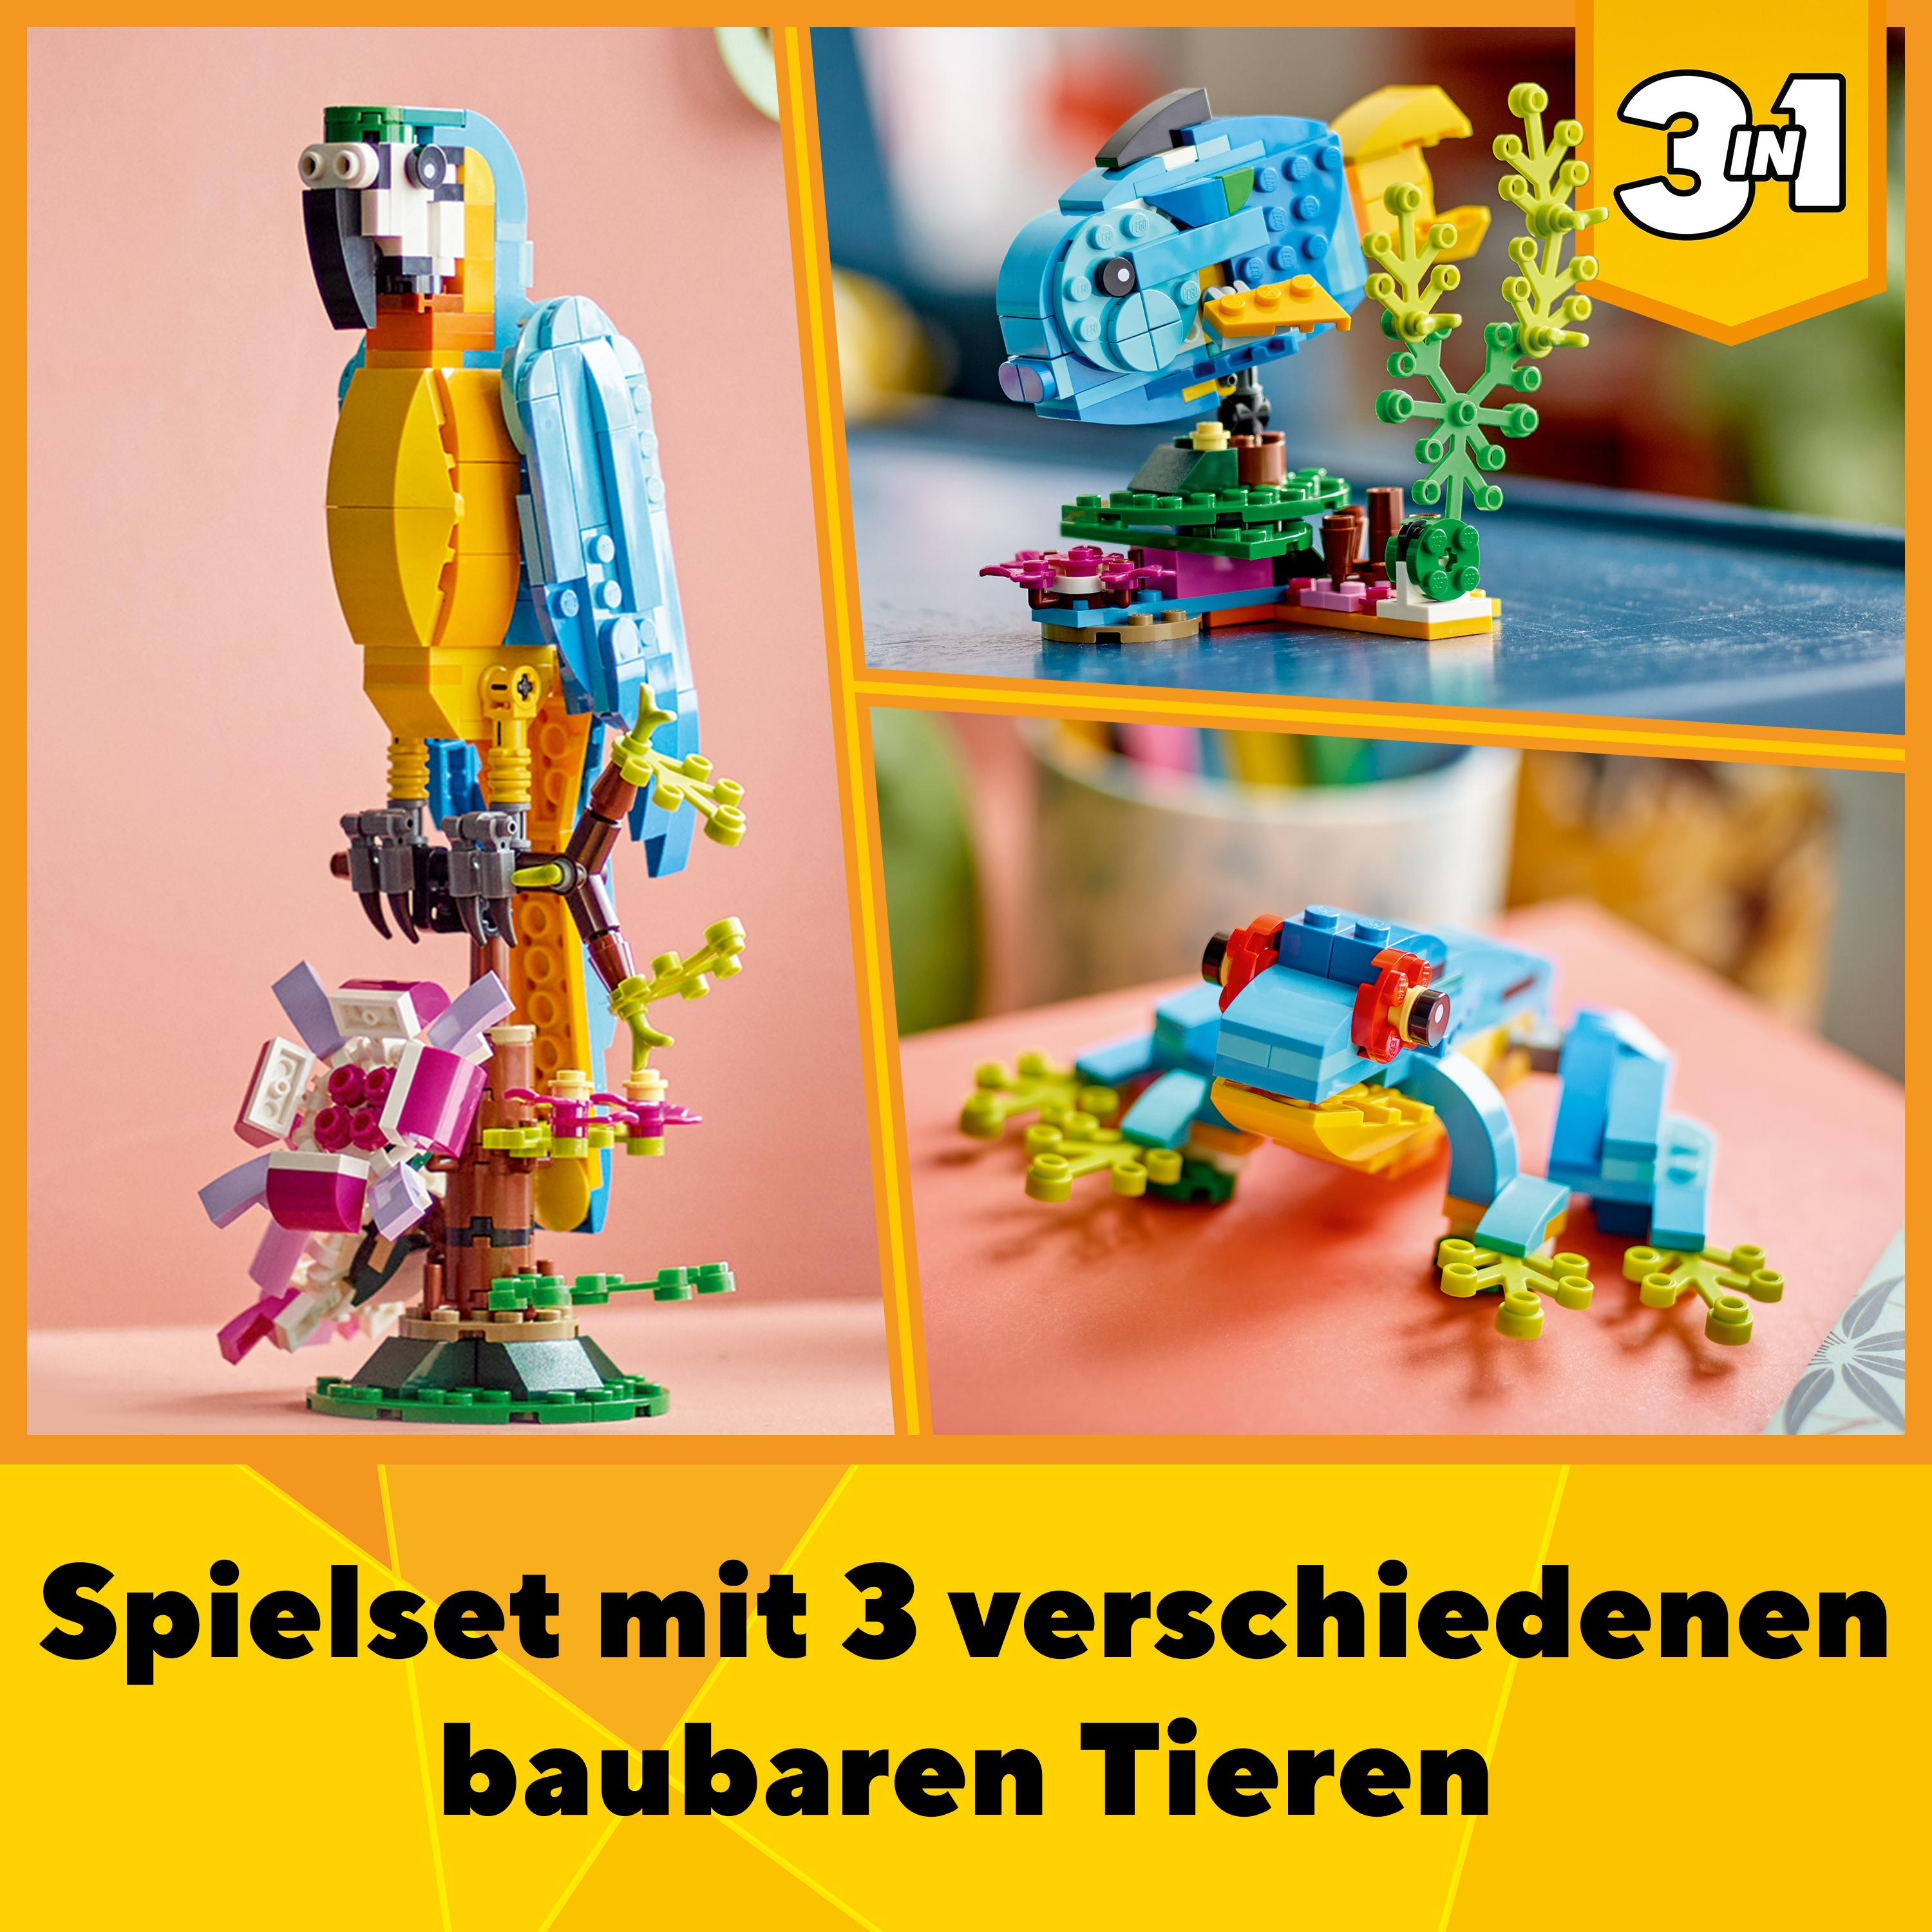 LEGO Mehrfarbig Papagei Creator Bausatz, Exotischer 31136